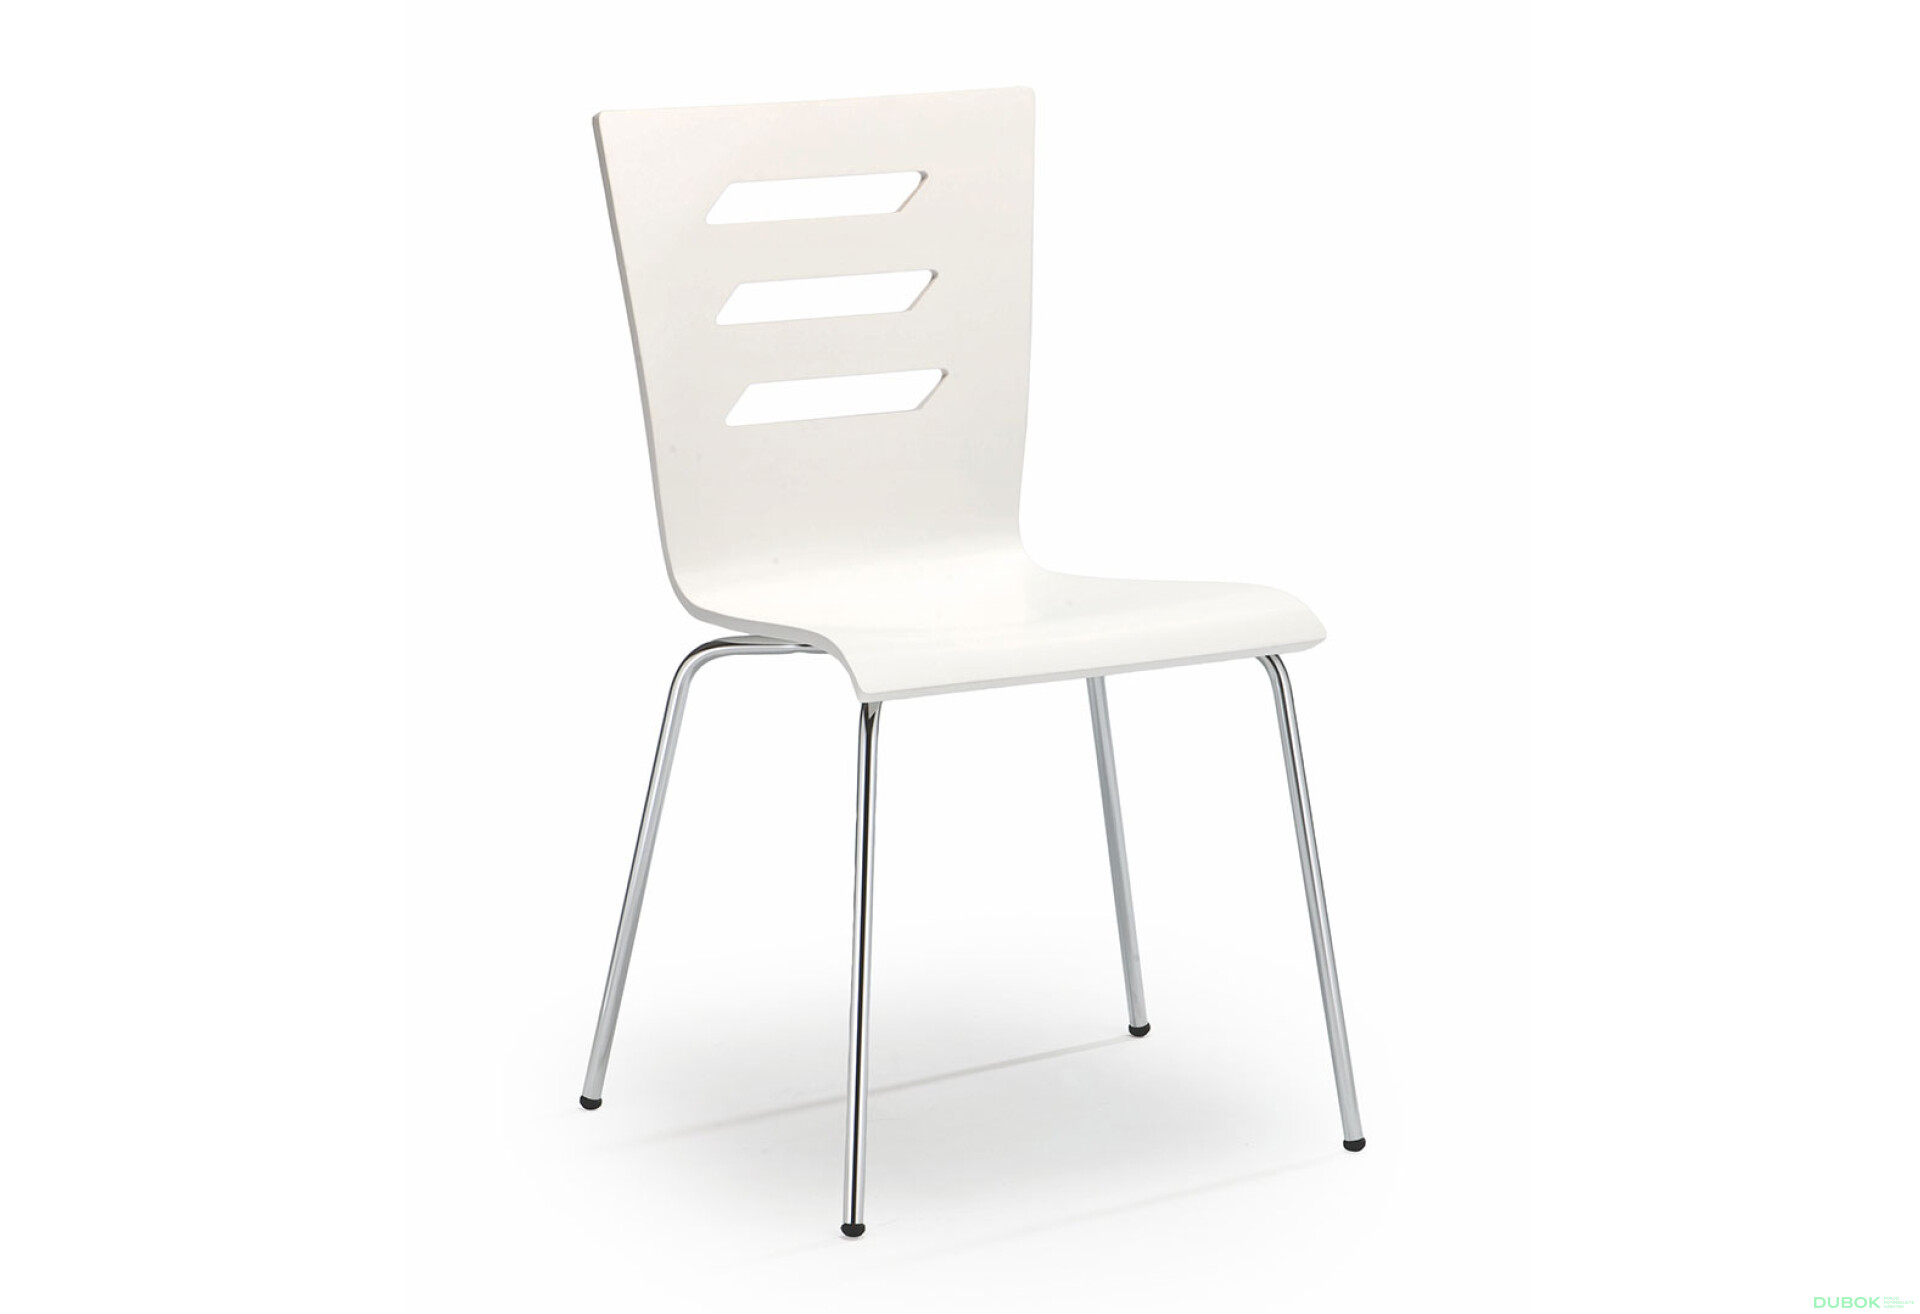 Фото 2 - Židle K155 chrom, bílá ekokůže